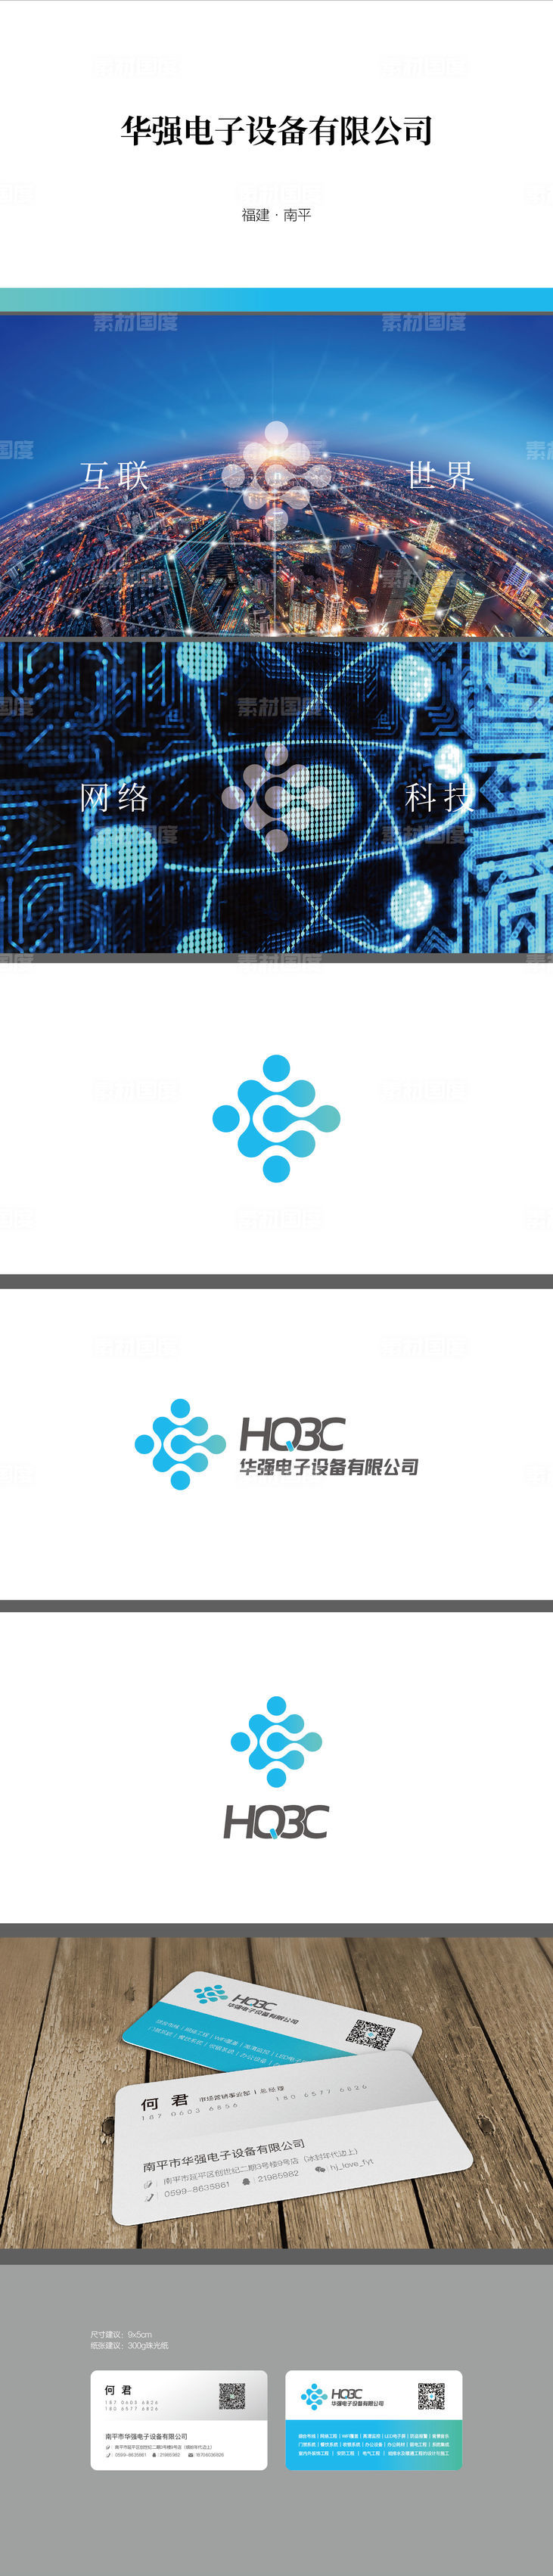 科技 logo vi 提报 提案